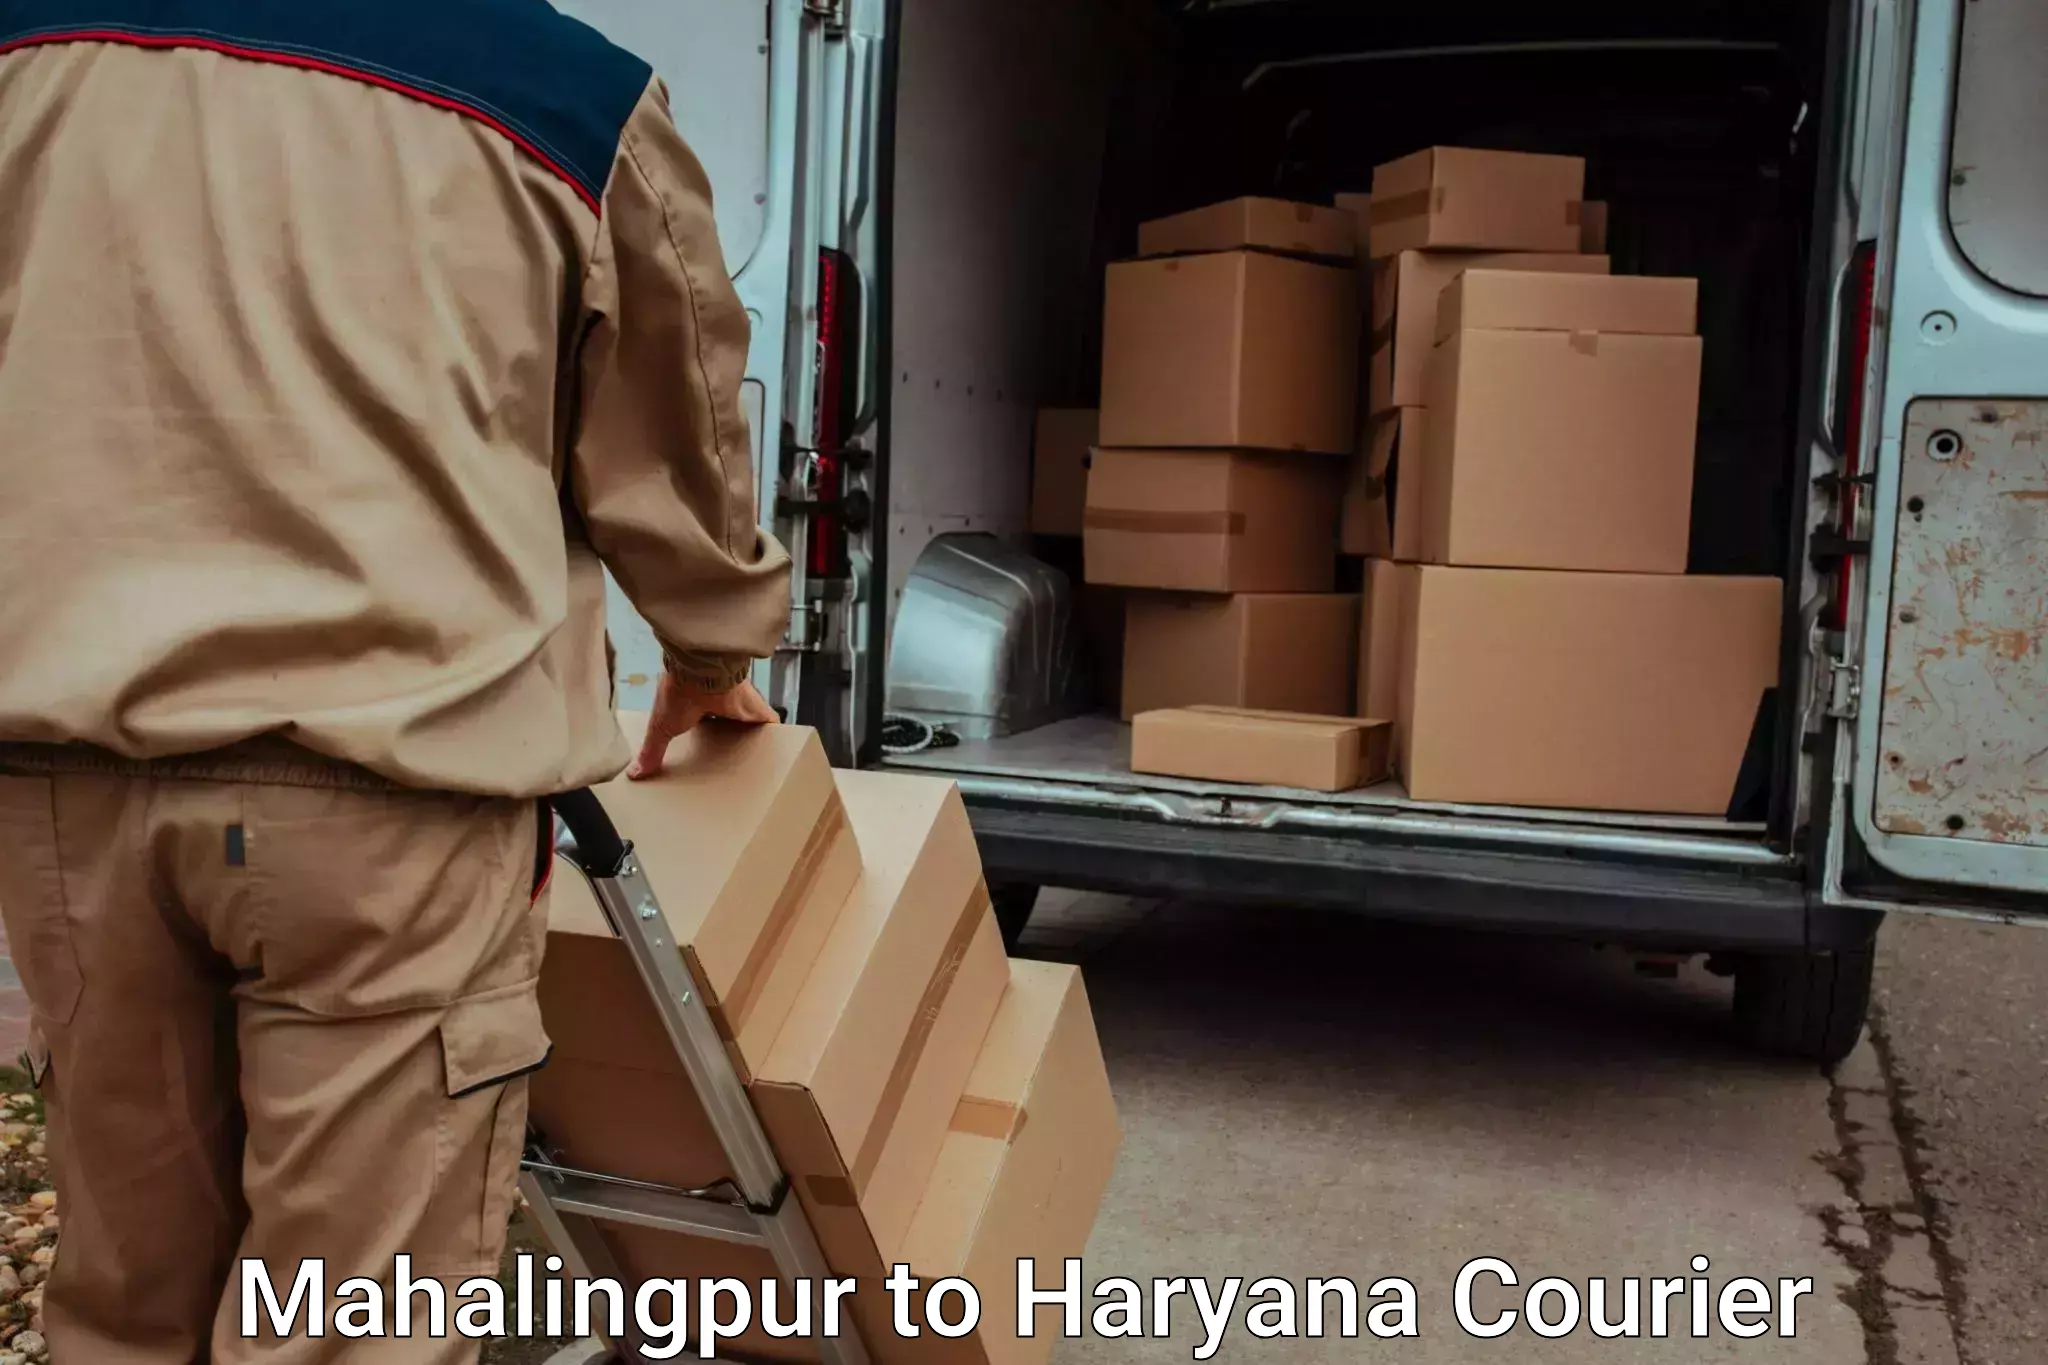 Automated luggage transport Mahalingpur to Gurugram